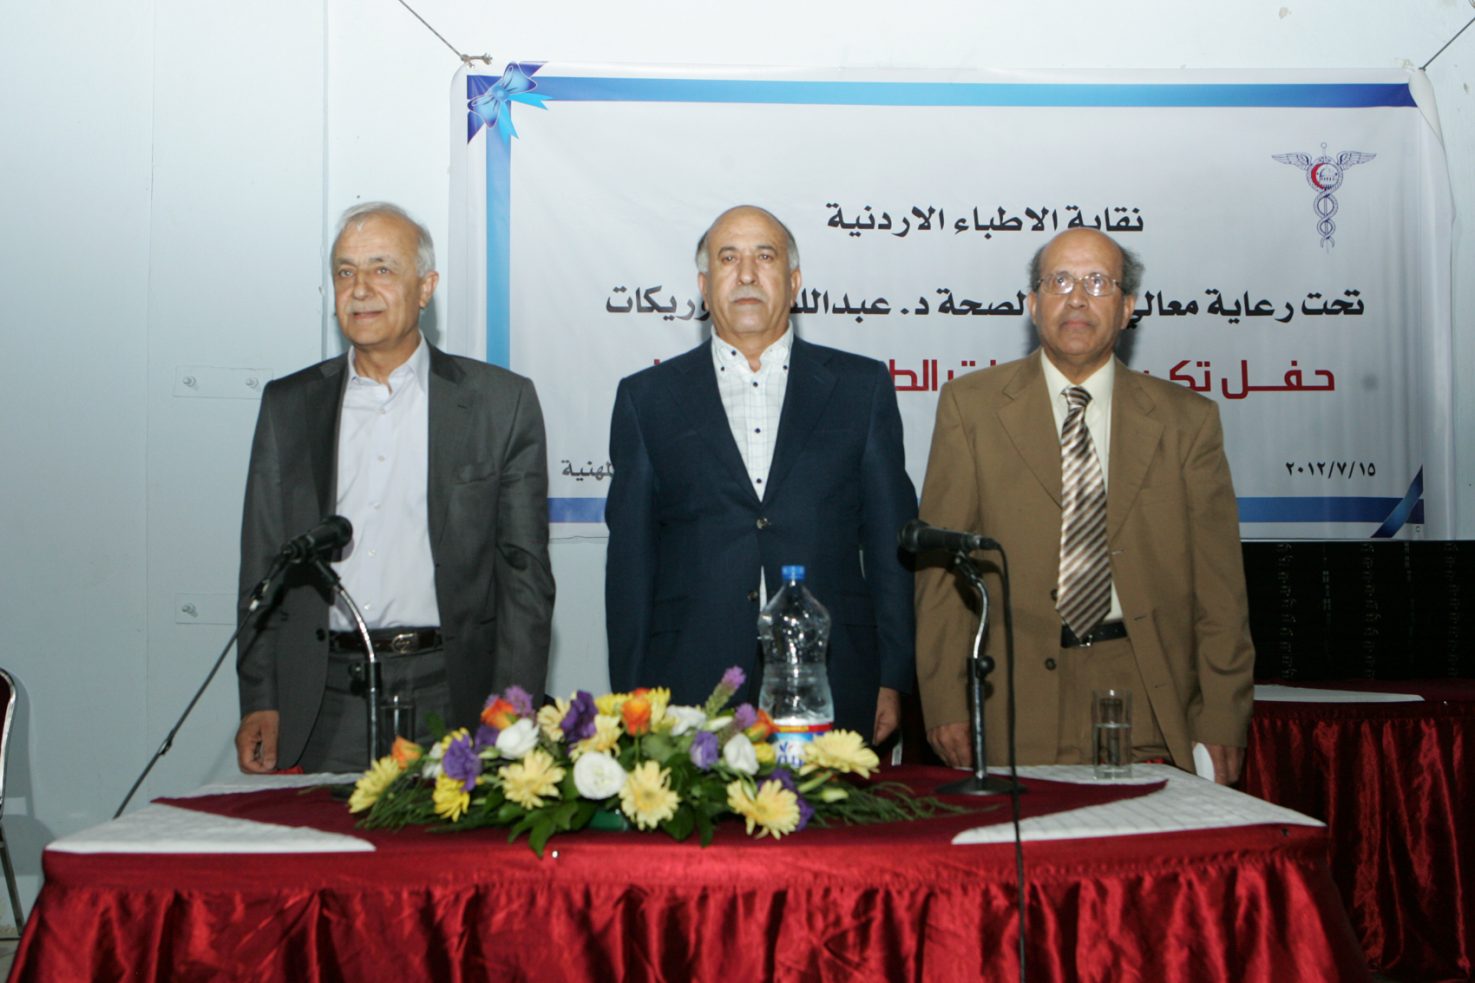 نقابة الأطباء الأردنية تكرم  الطبيبات الرائدات في المهنة وعددهن 66 طبيبة يتوزعن على مختلف التخصصات يوم  (15 / يوليو / 2012)